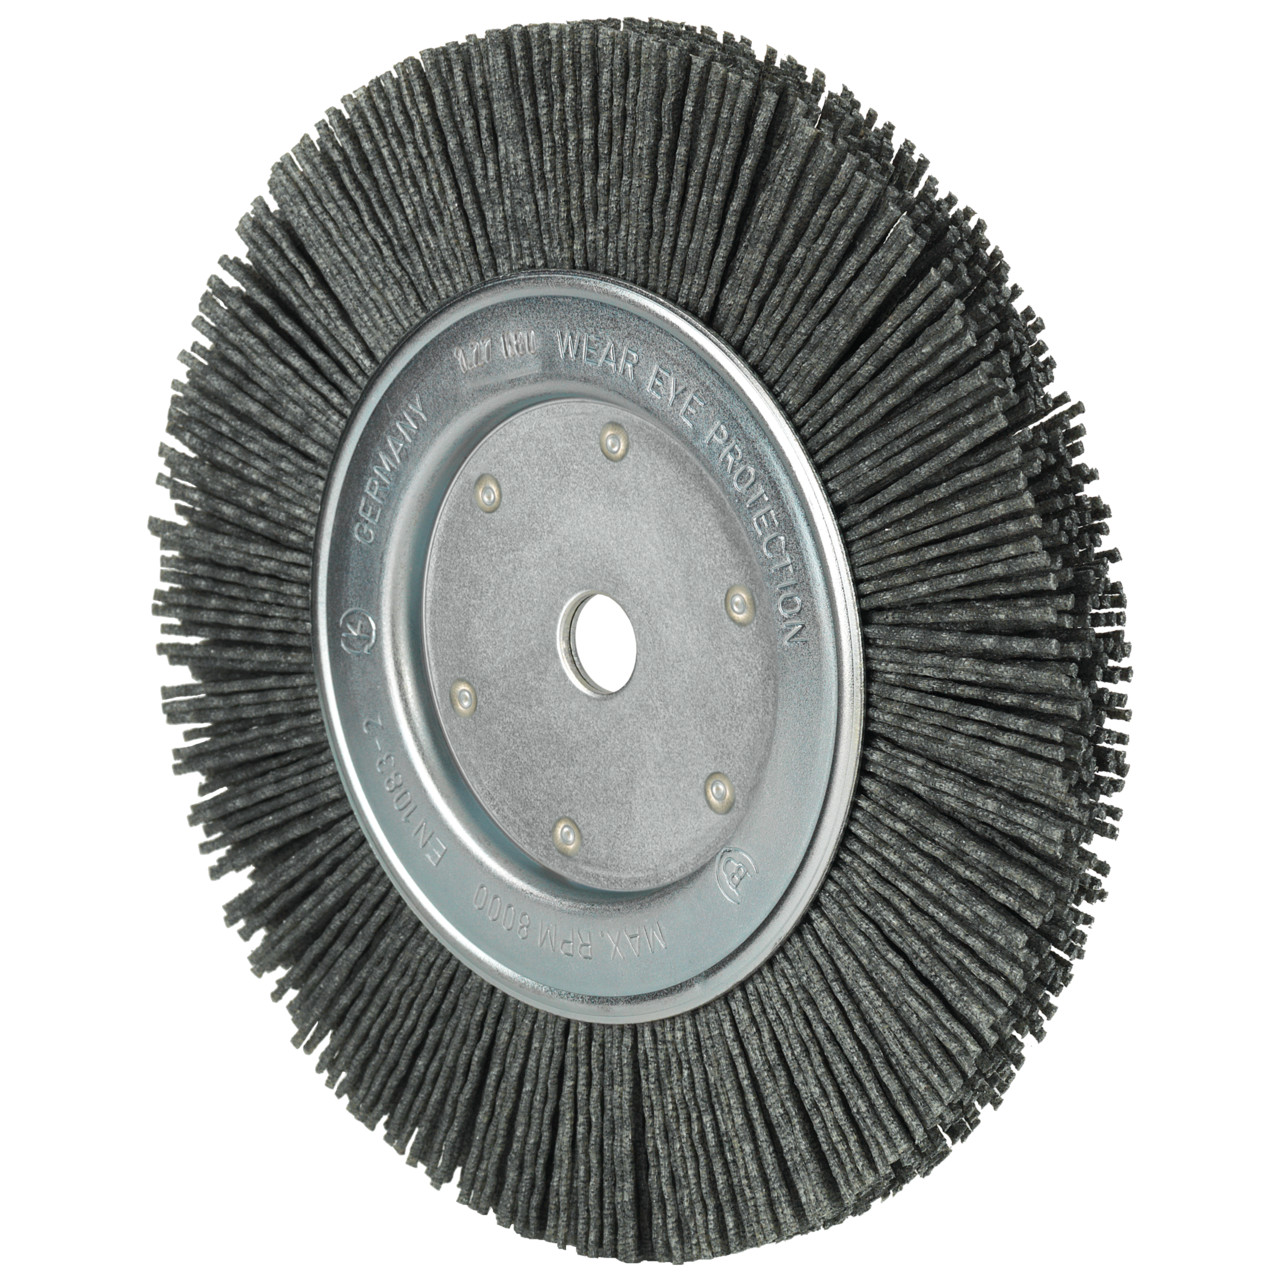 Spazzole rotonde Tyrolit DxLxH 200x13x43x50.8 Per uso universale, forma: 1RDK - (spazzole rotonde), Art. 227435